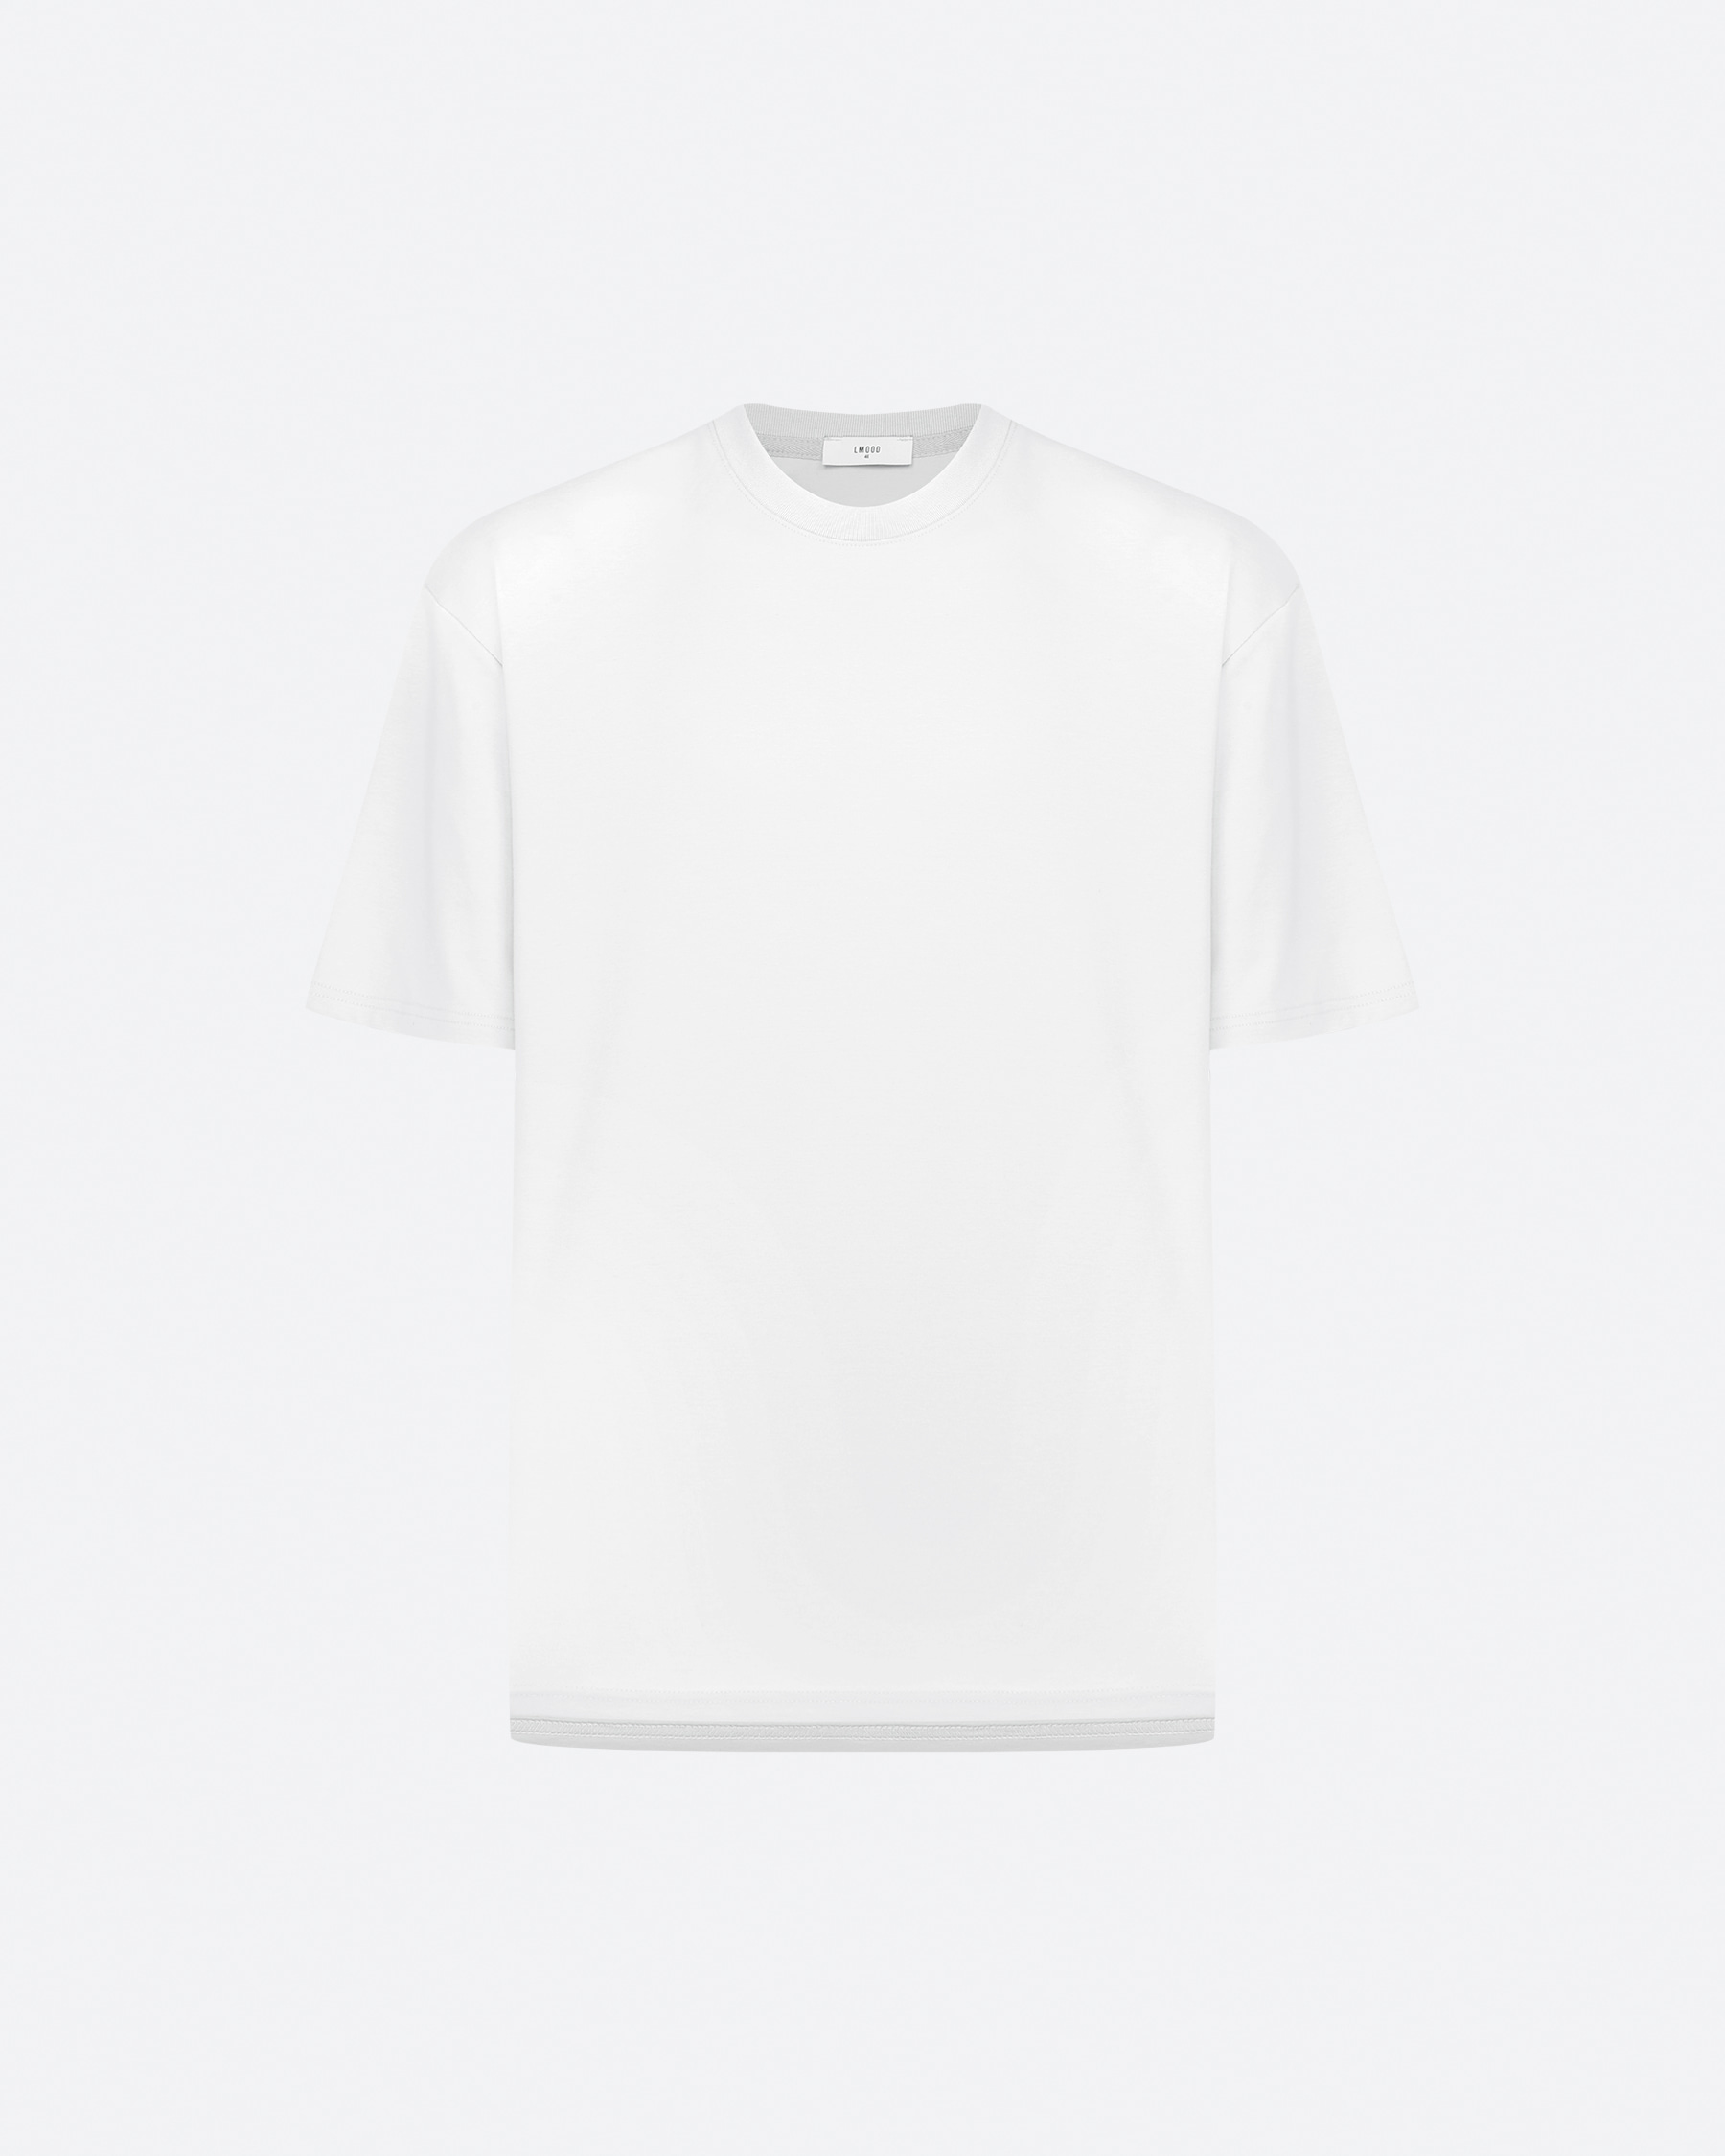 YOUNG 프리미엄 실켓 티셔츠 WHITE